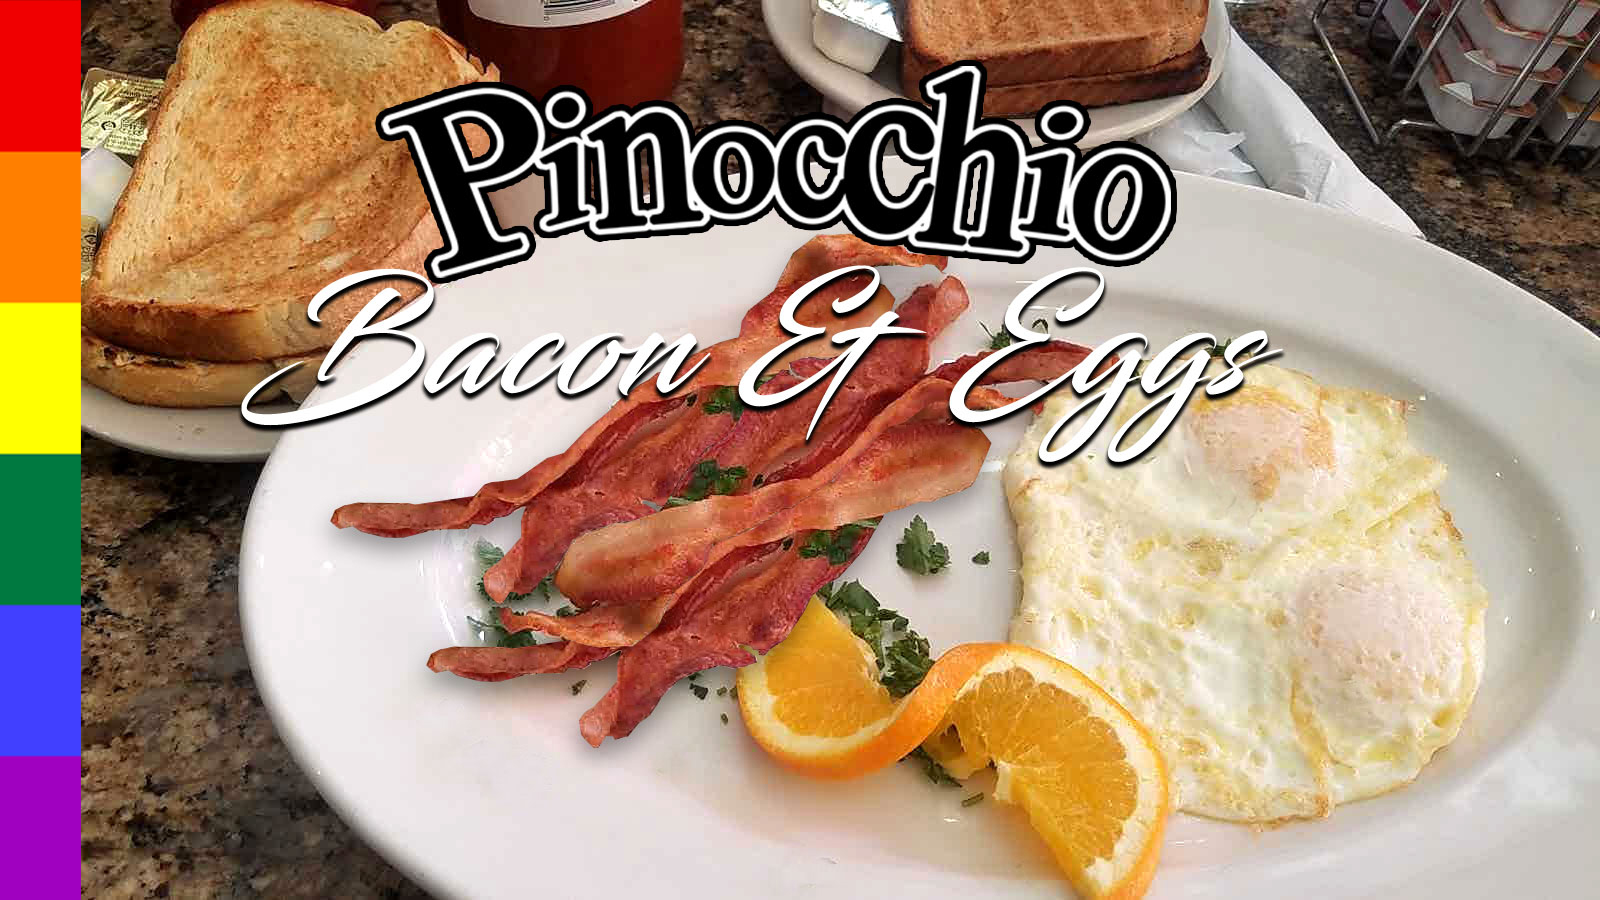 Pinocchio's Bacon & Eggs